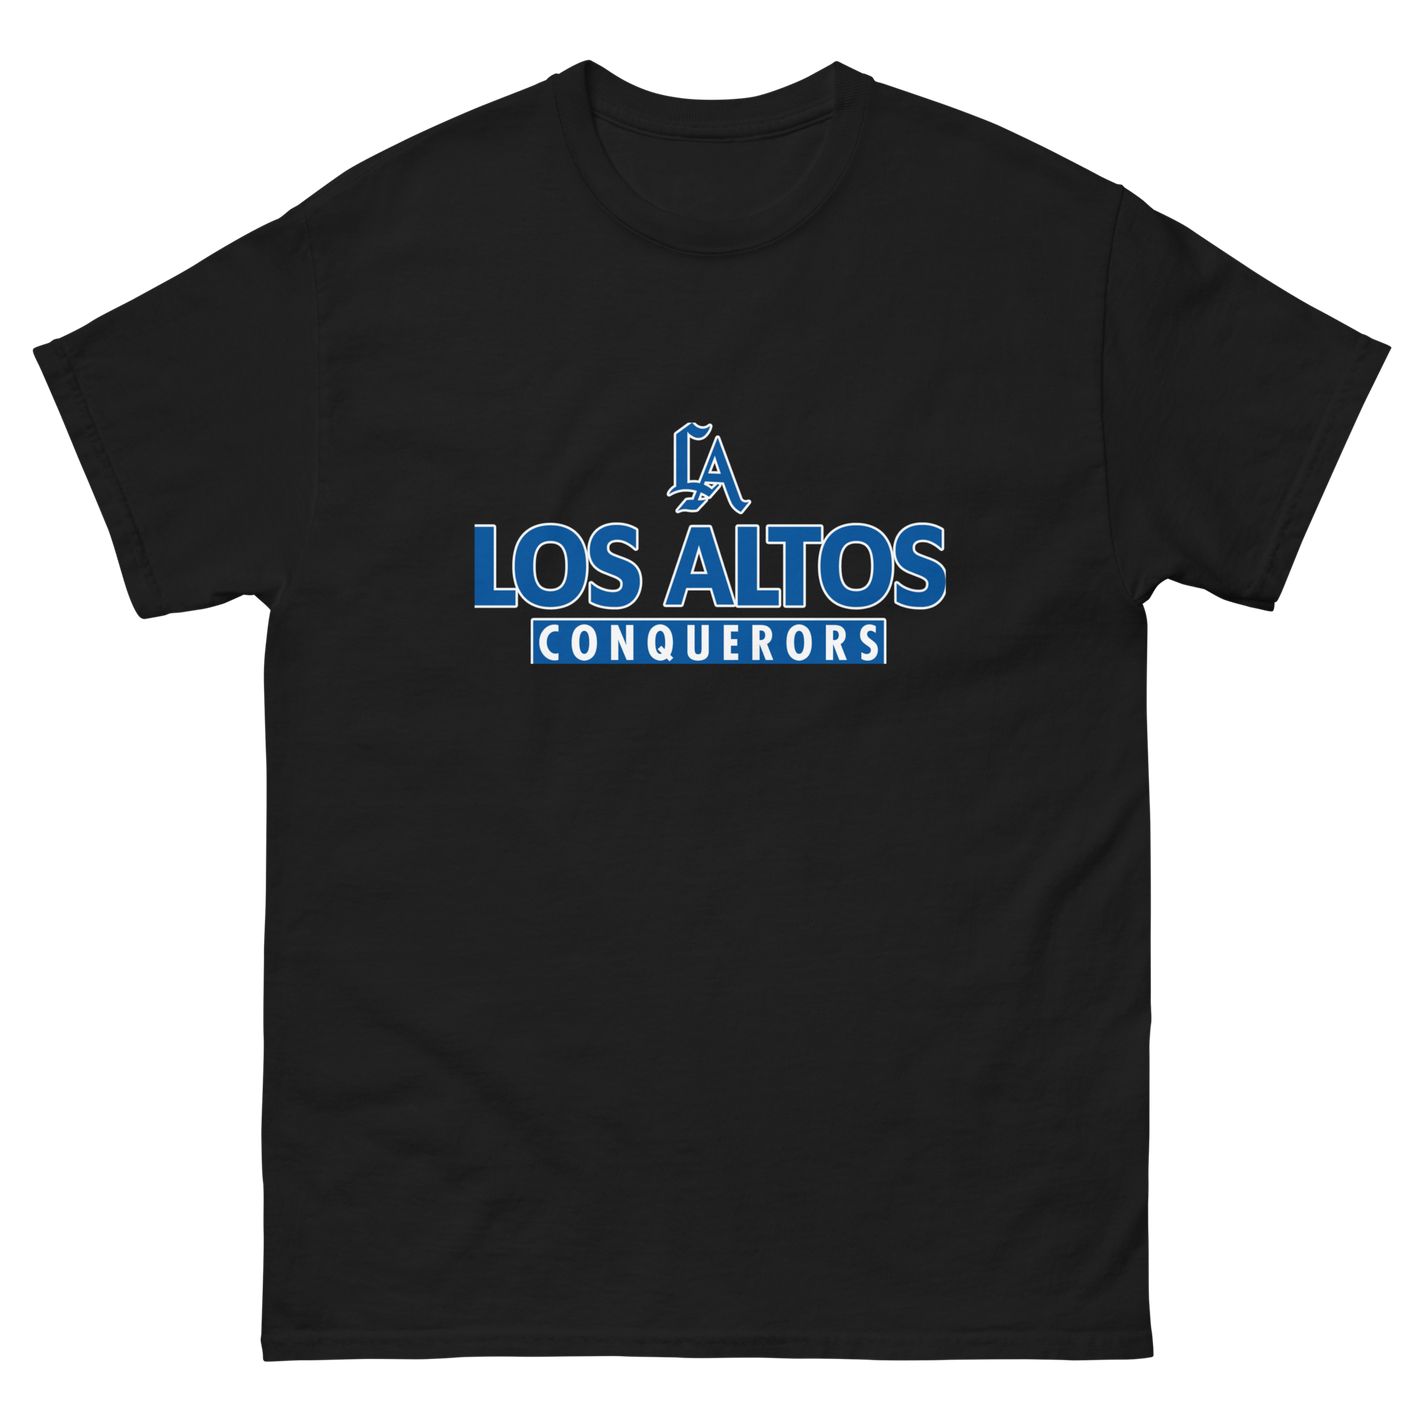 Los Altos Conquerors classic tee